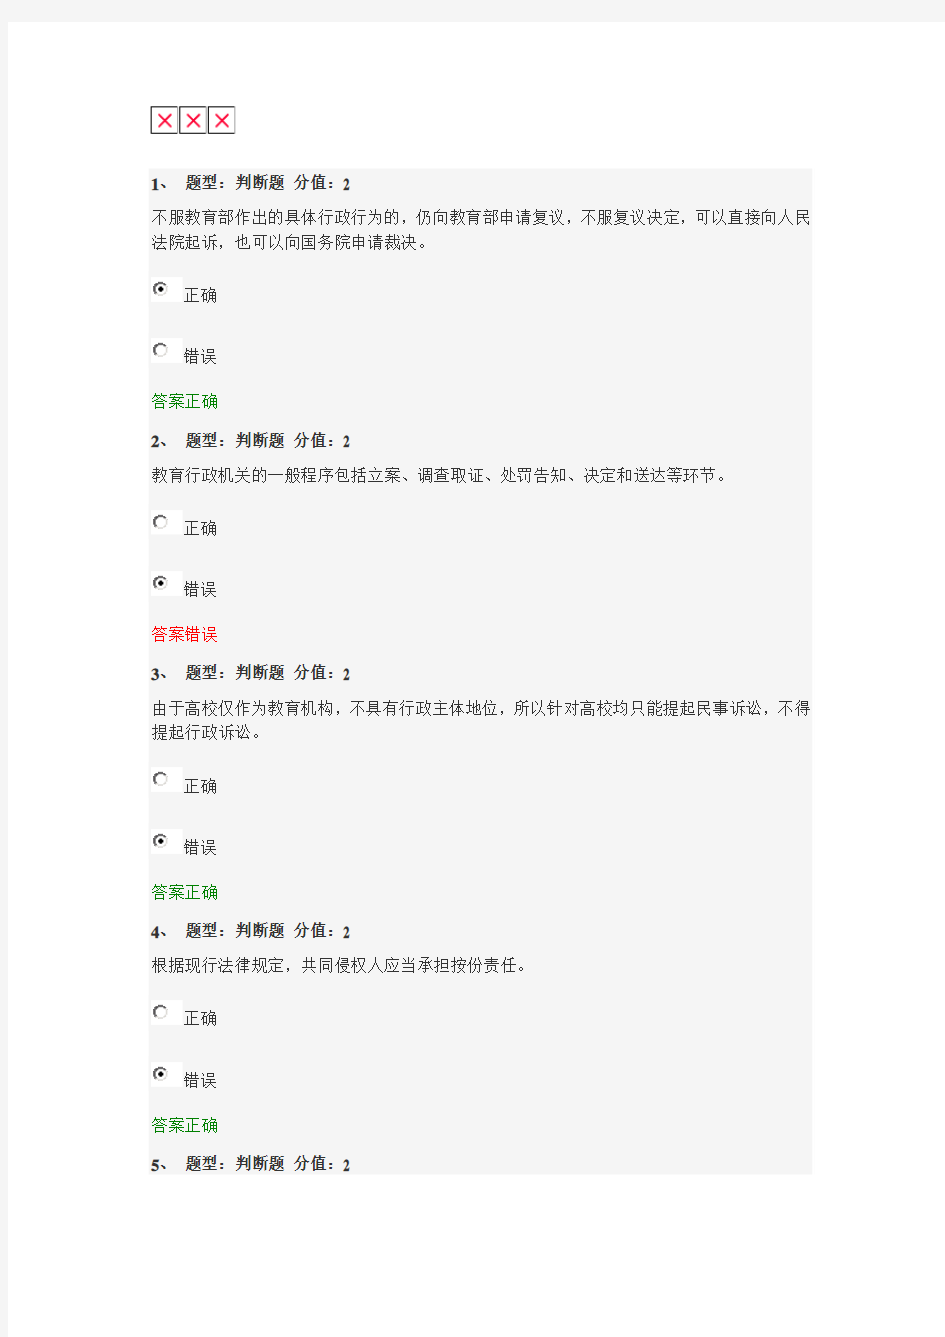 我考了92分你也可以的,江苏省中小学教师网上法律知识竞赛试题及答案